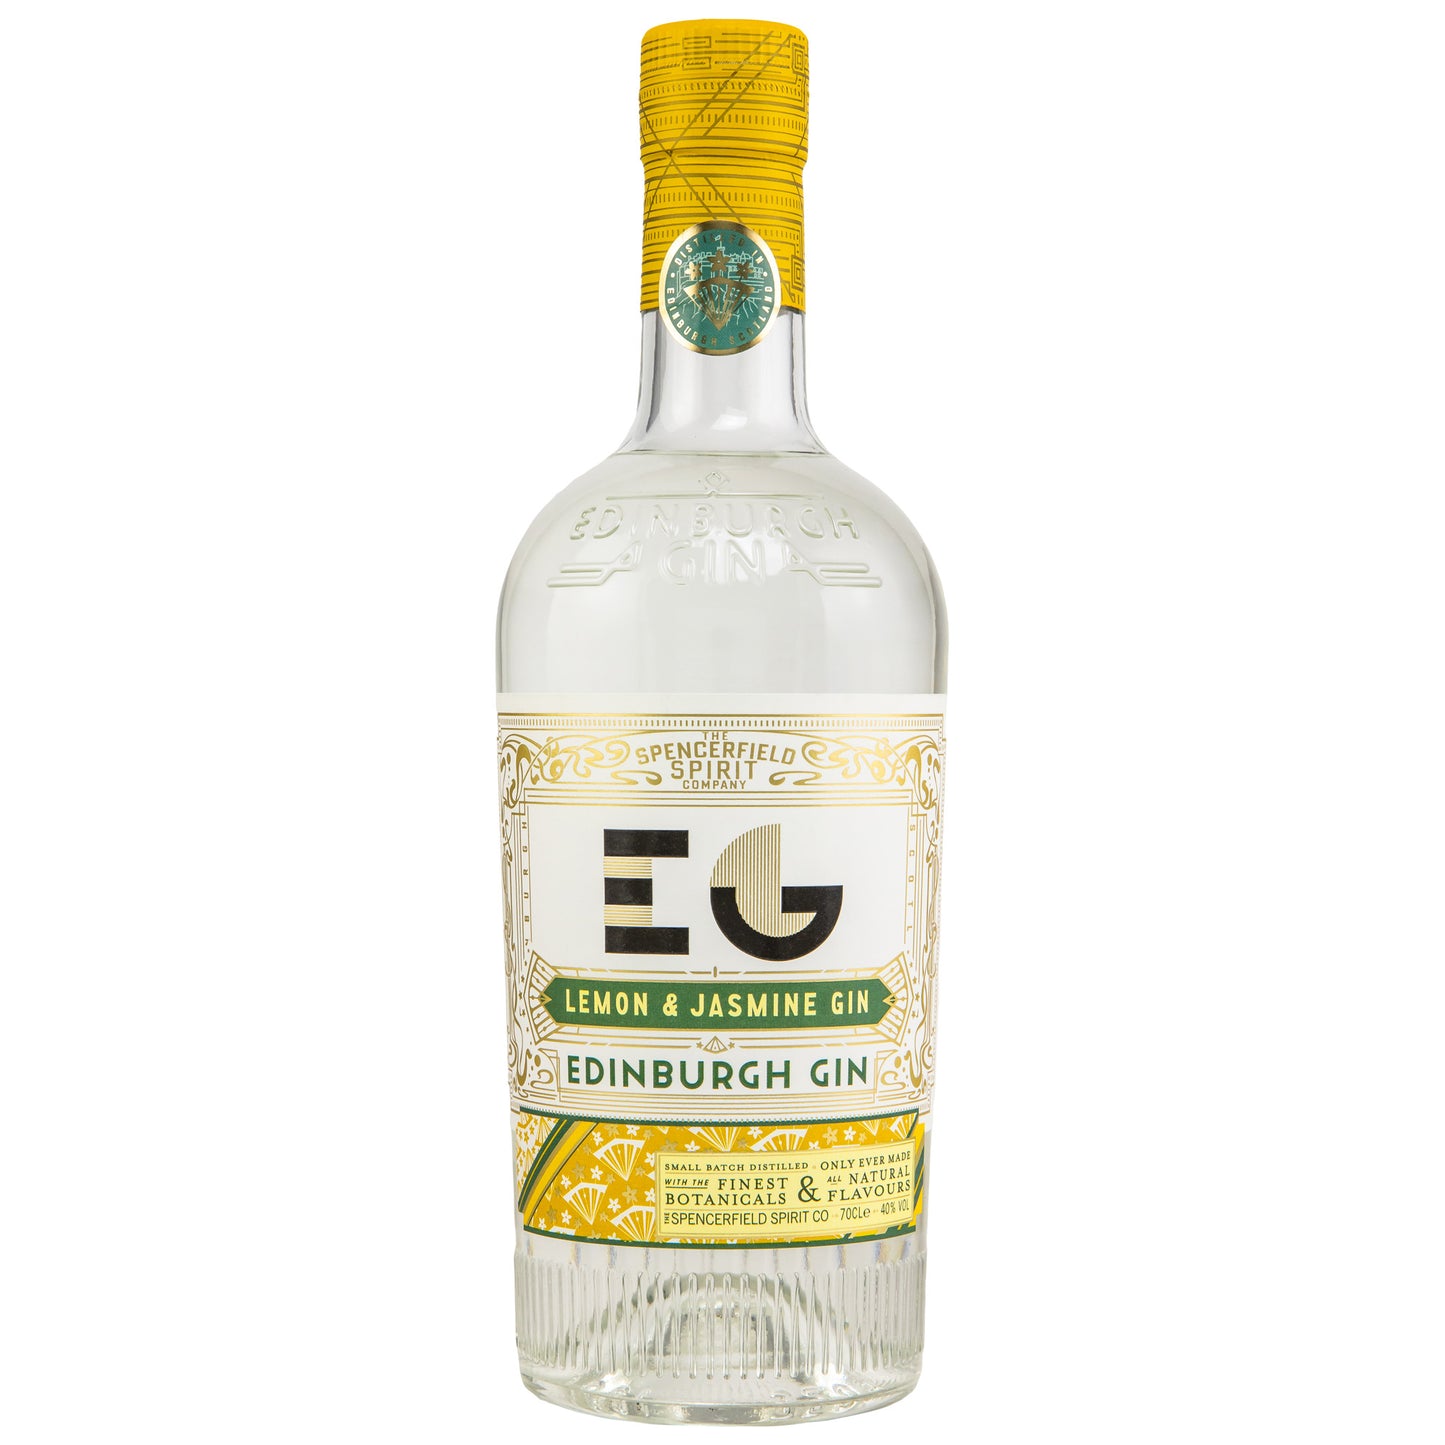 EDINBURGH GIN - Lemon & Jasmine - 40% Vol.